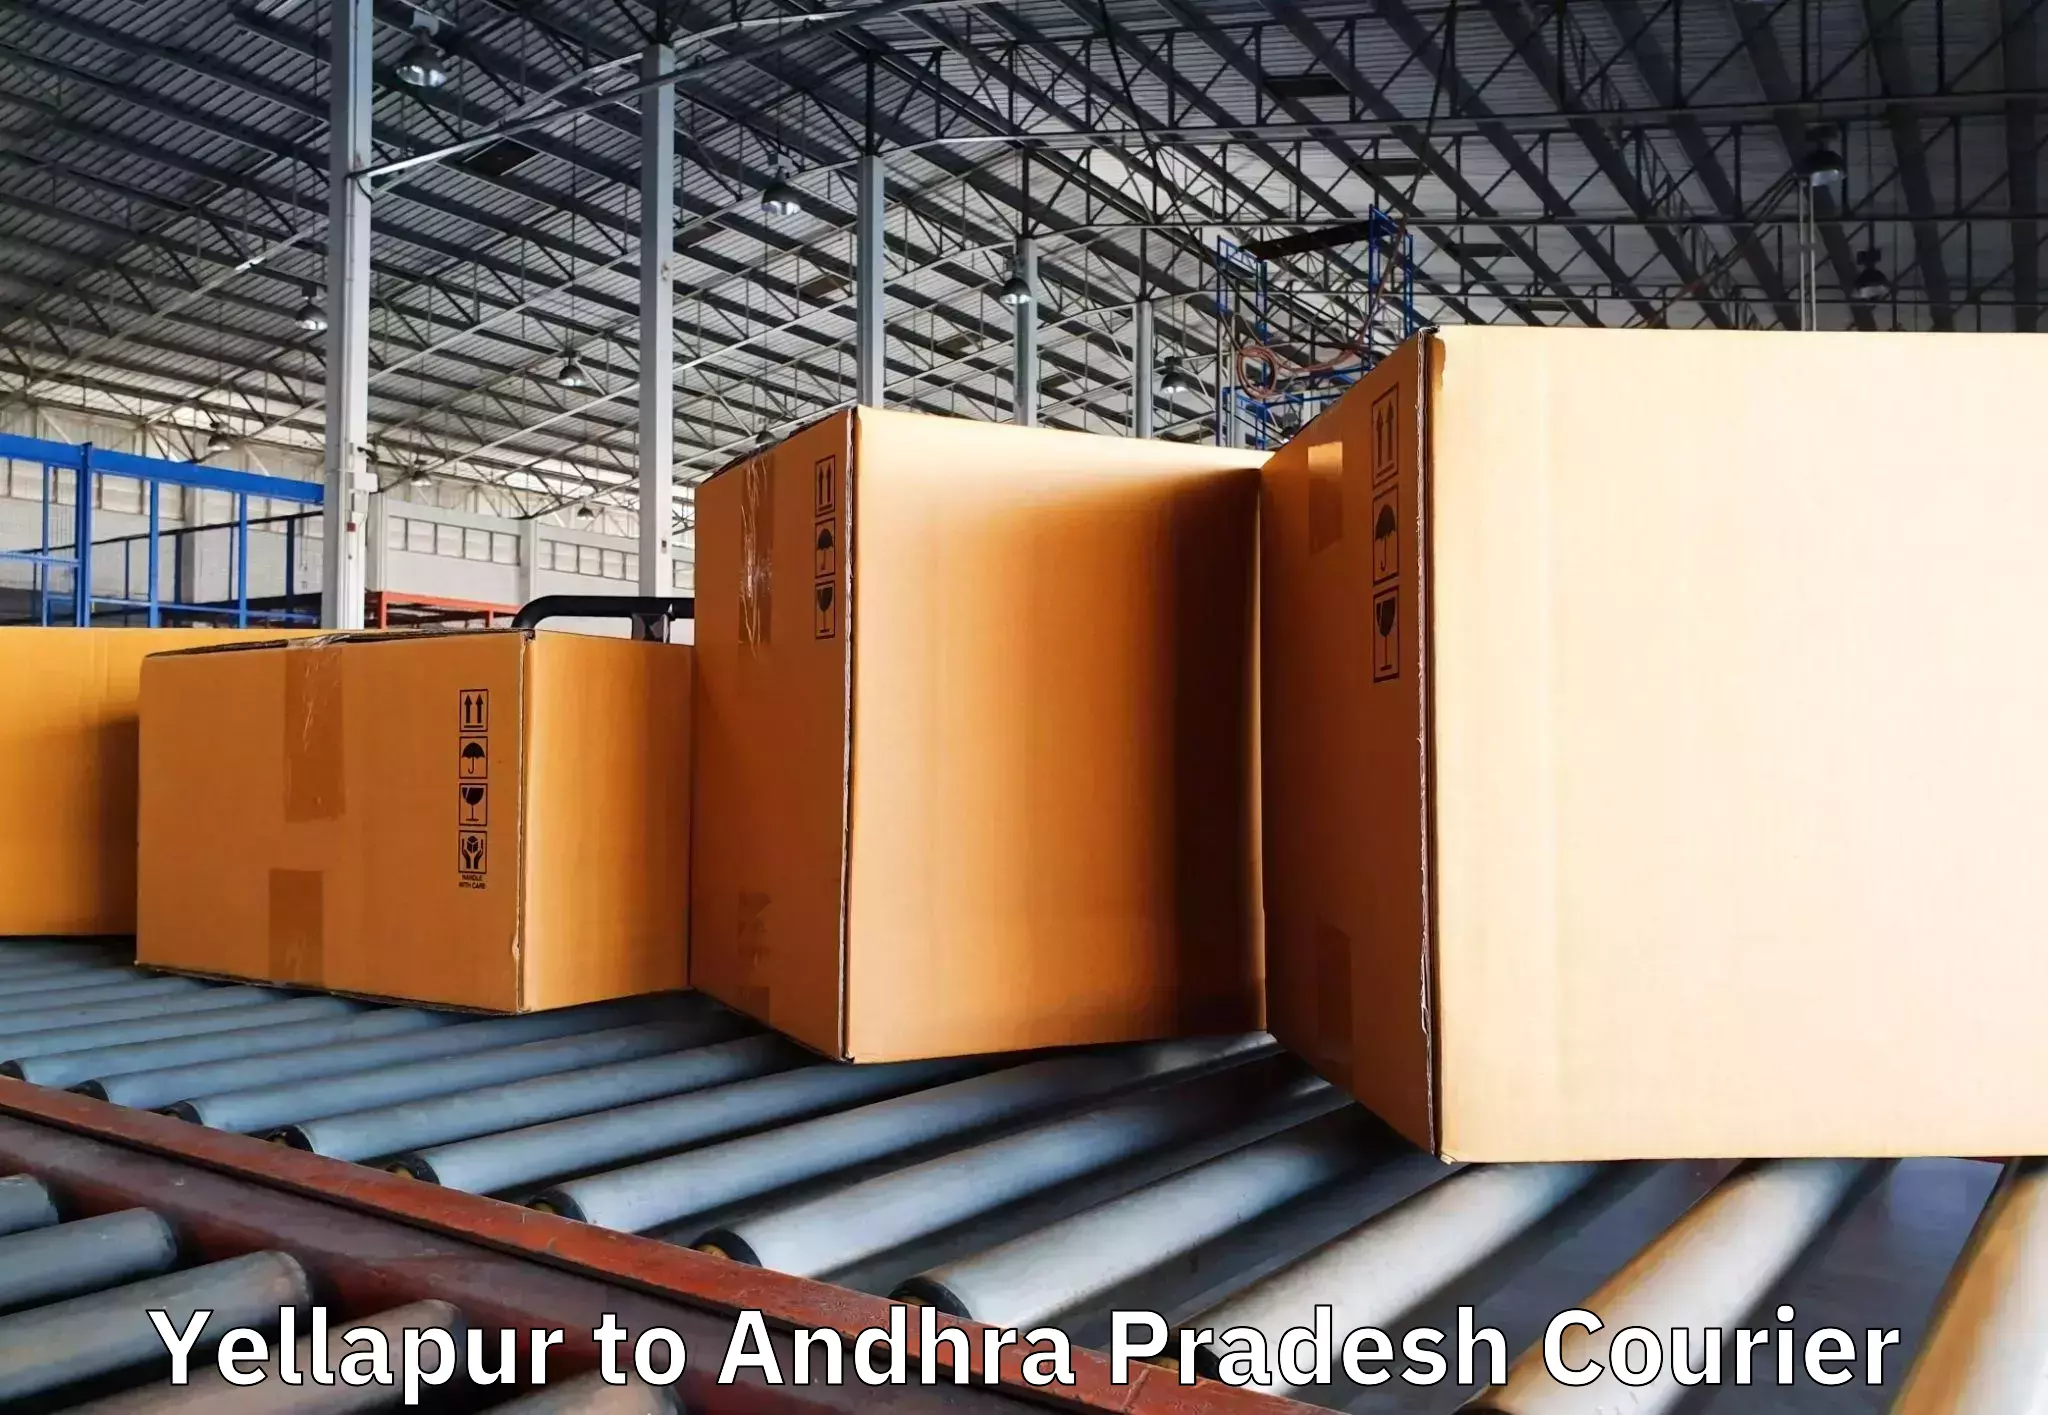 Furniture moving specialists Yellapur to Amarapuram